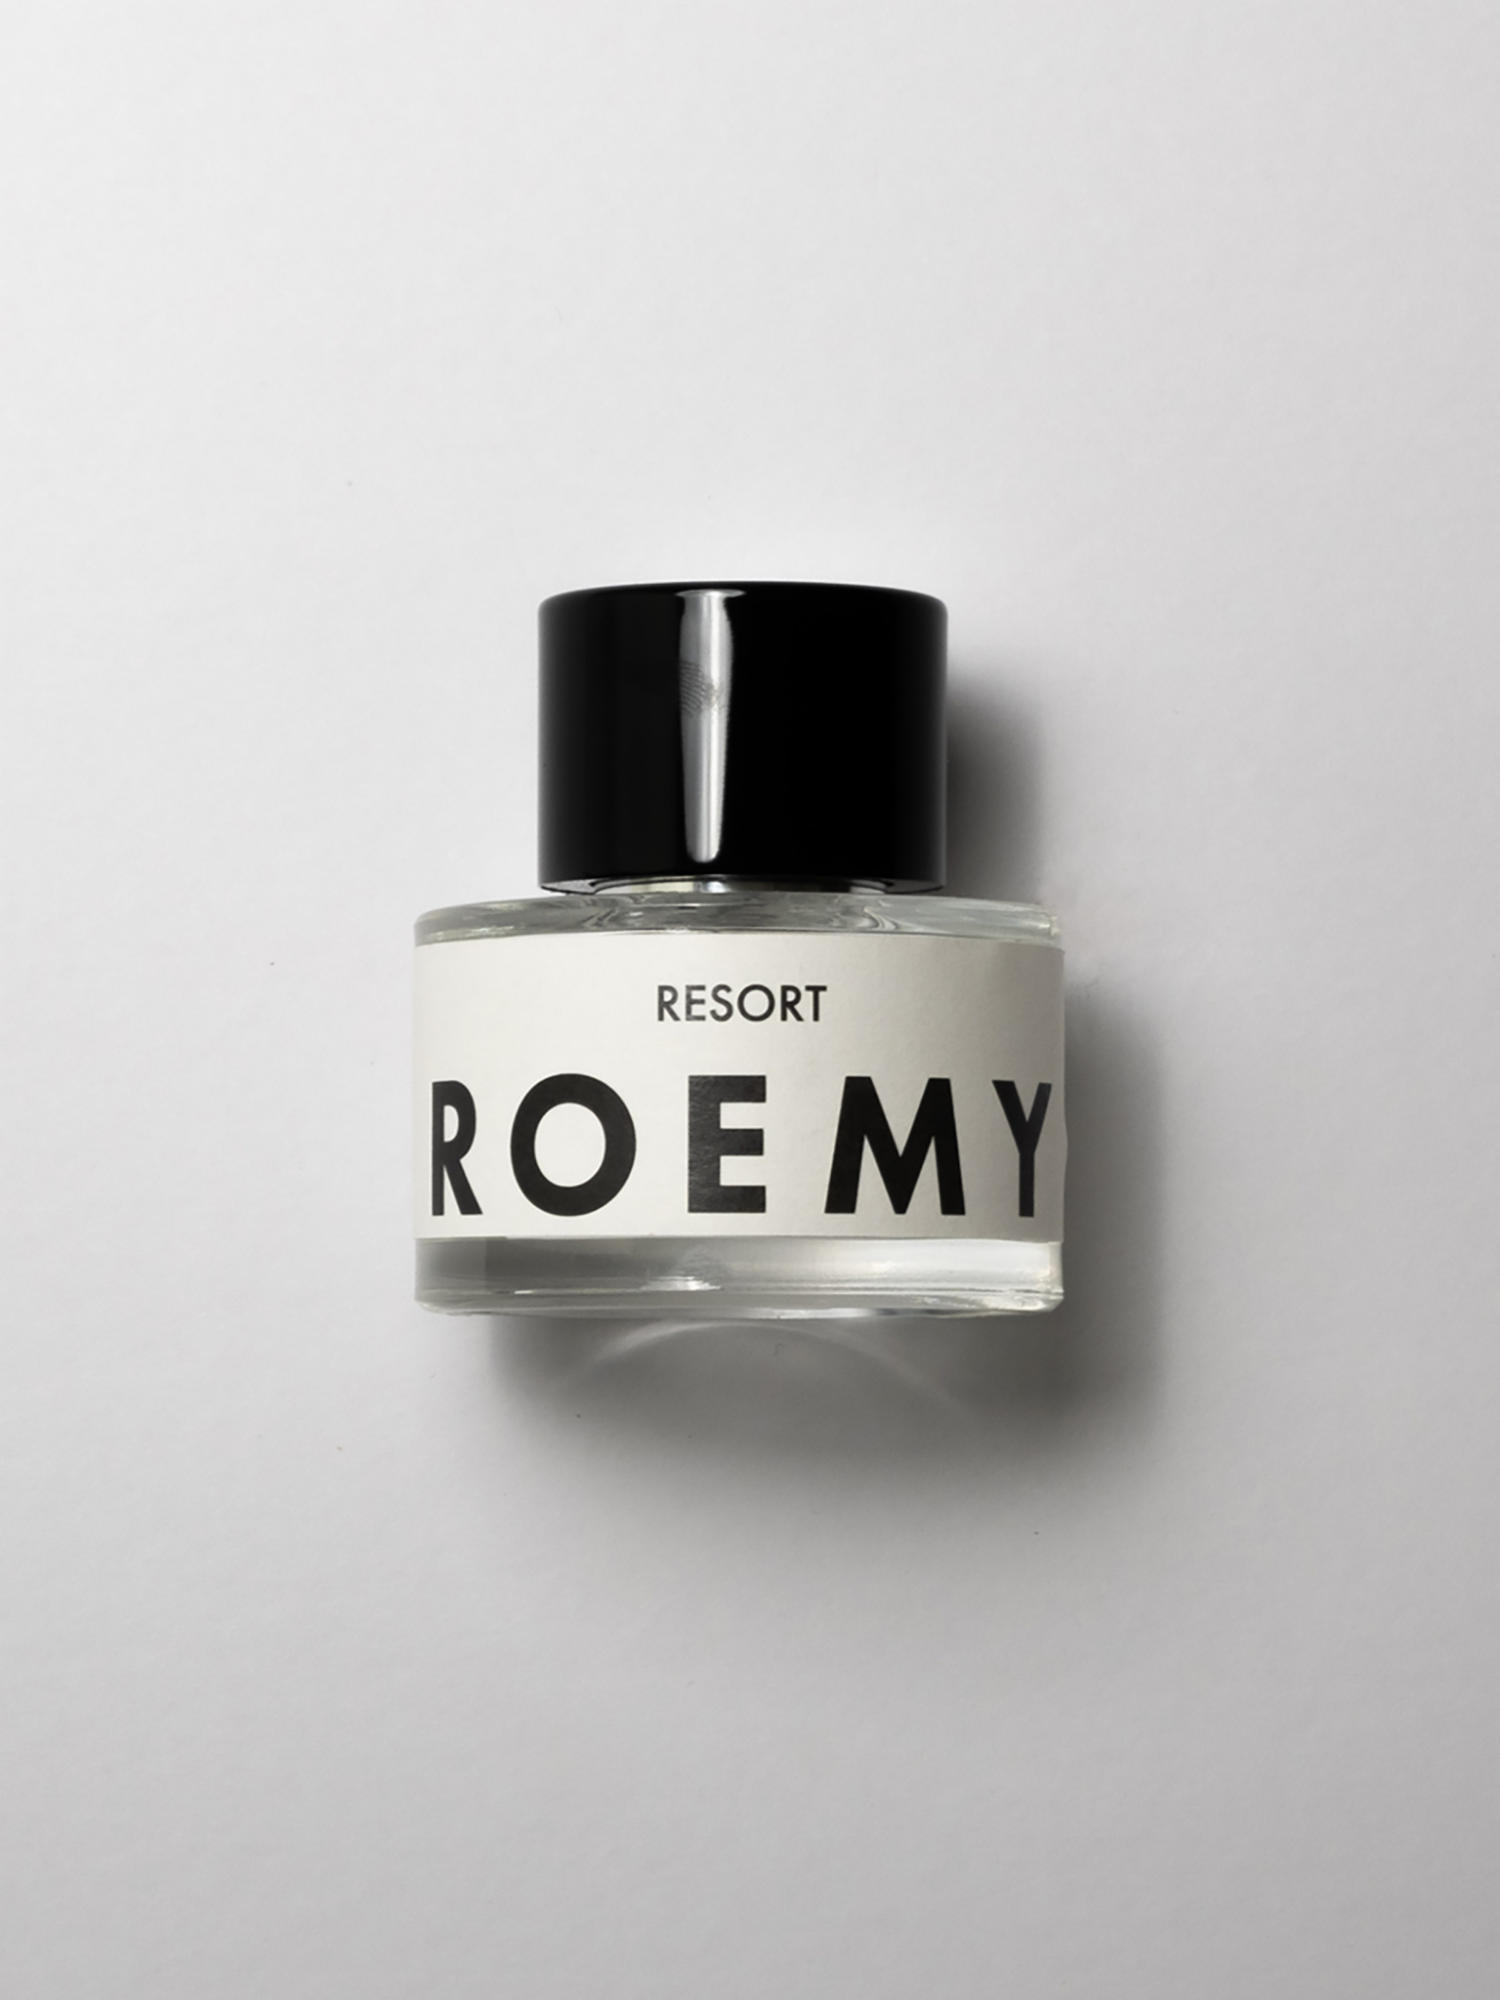 ROEMY - Resort